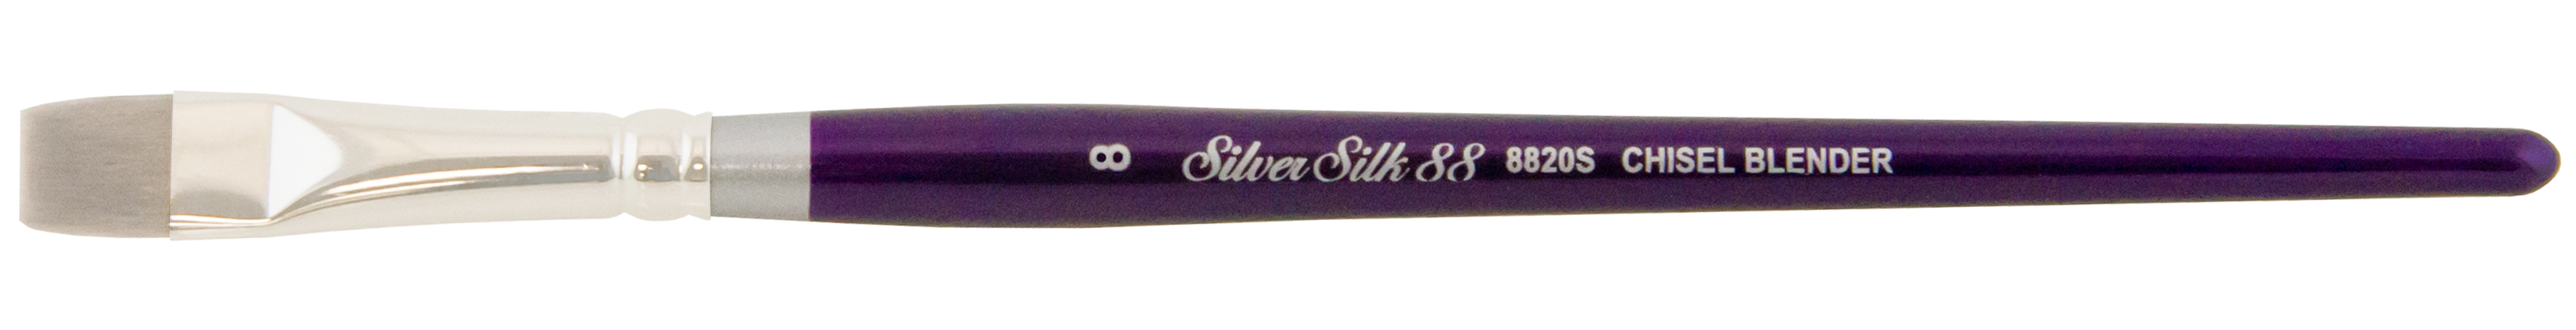 Silver Brush Silver Silk 88 SH 8820S Chisel Blender